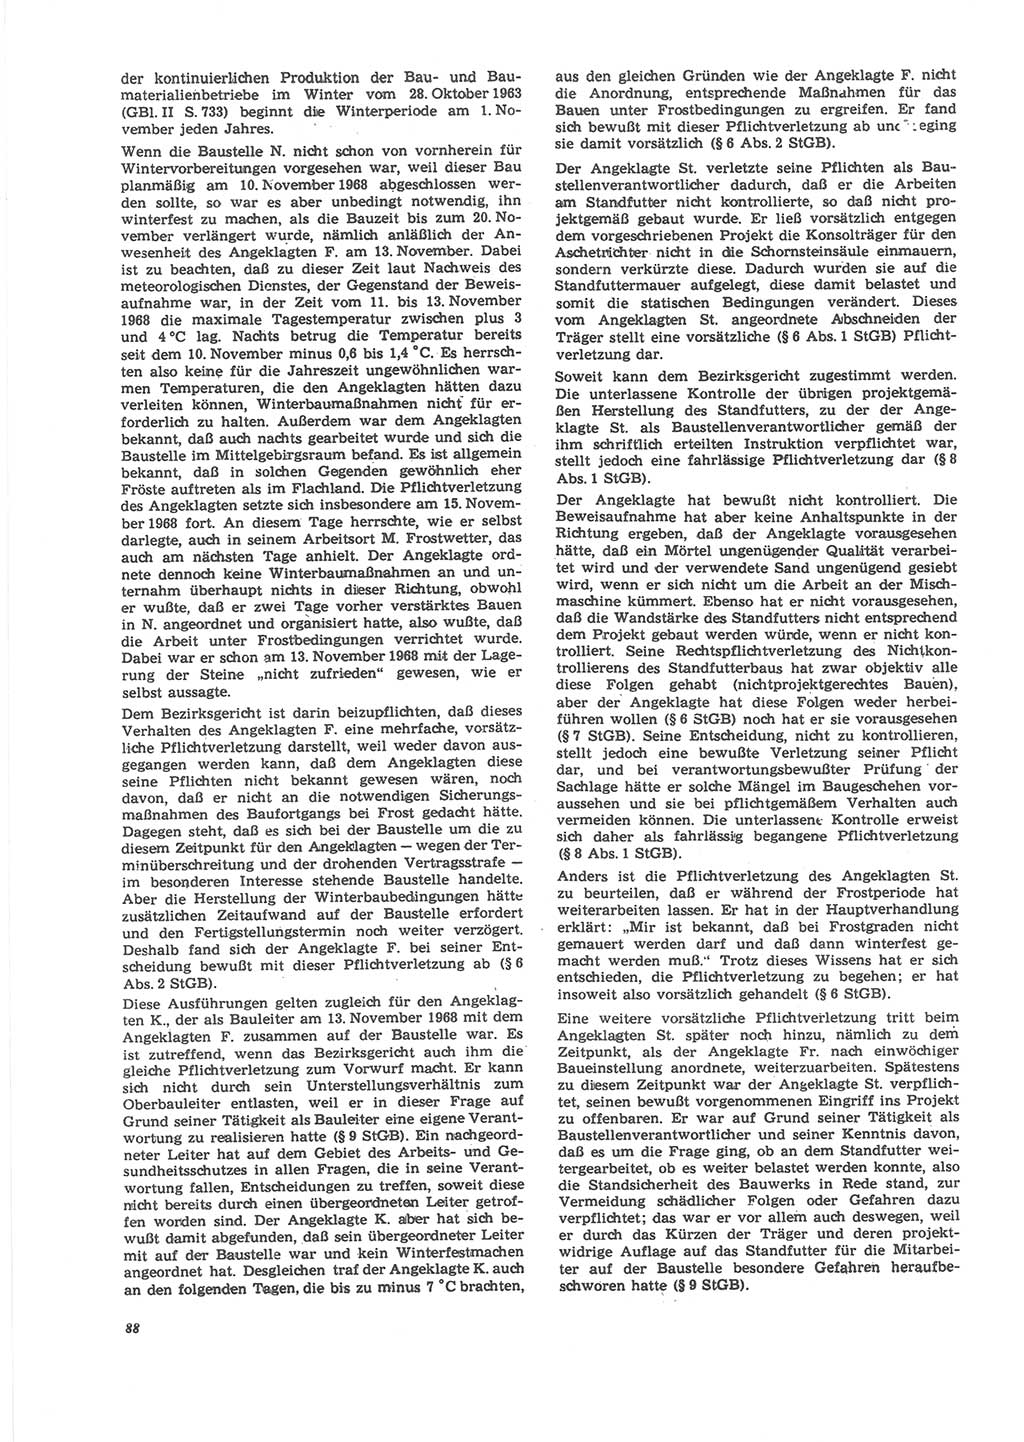 Neue Justiz (NJ), Zeitschrift für Recht und Rechtswissenschaft [Deutsche Demokratische Republik (DDR)], 24. Jahrgang 1970, Seite 88 (NJ DDR 1970, S. 88)